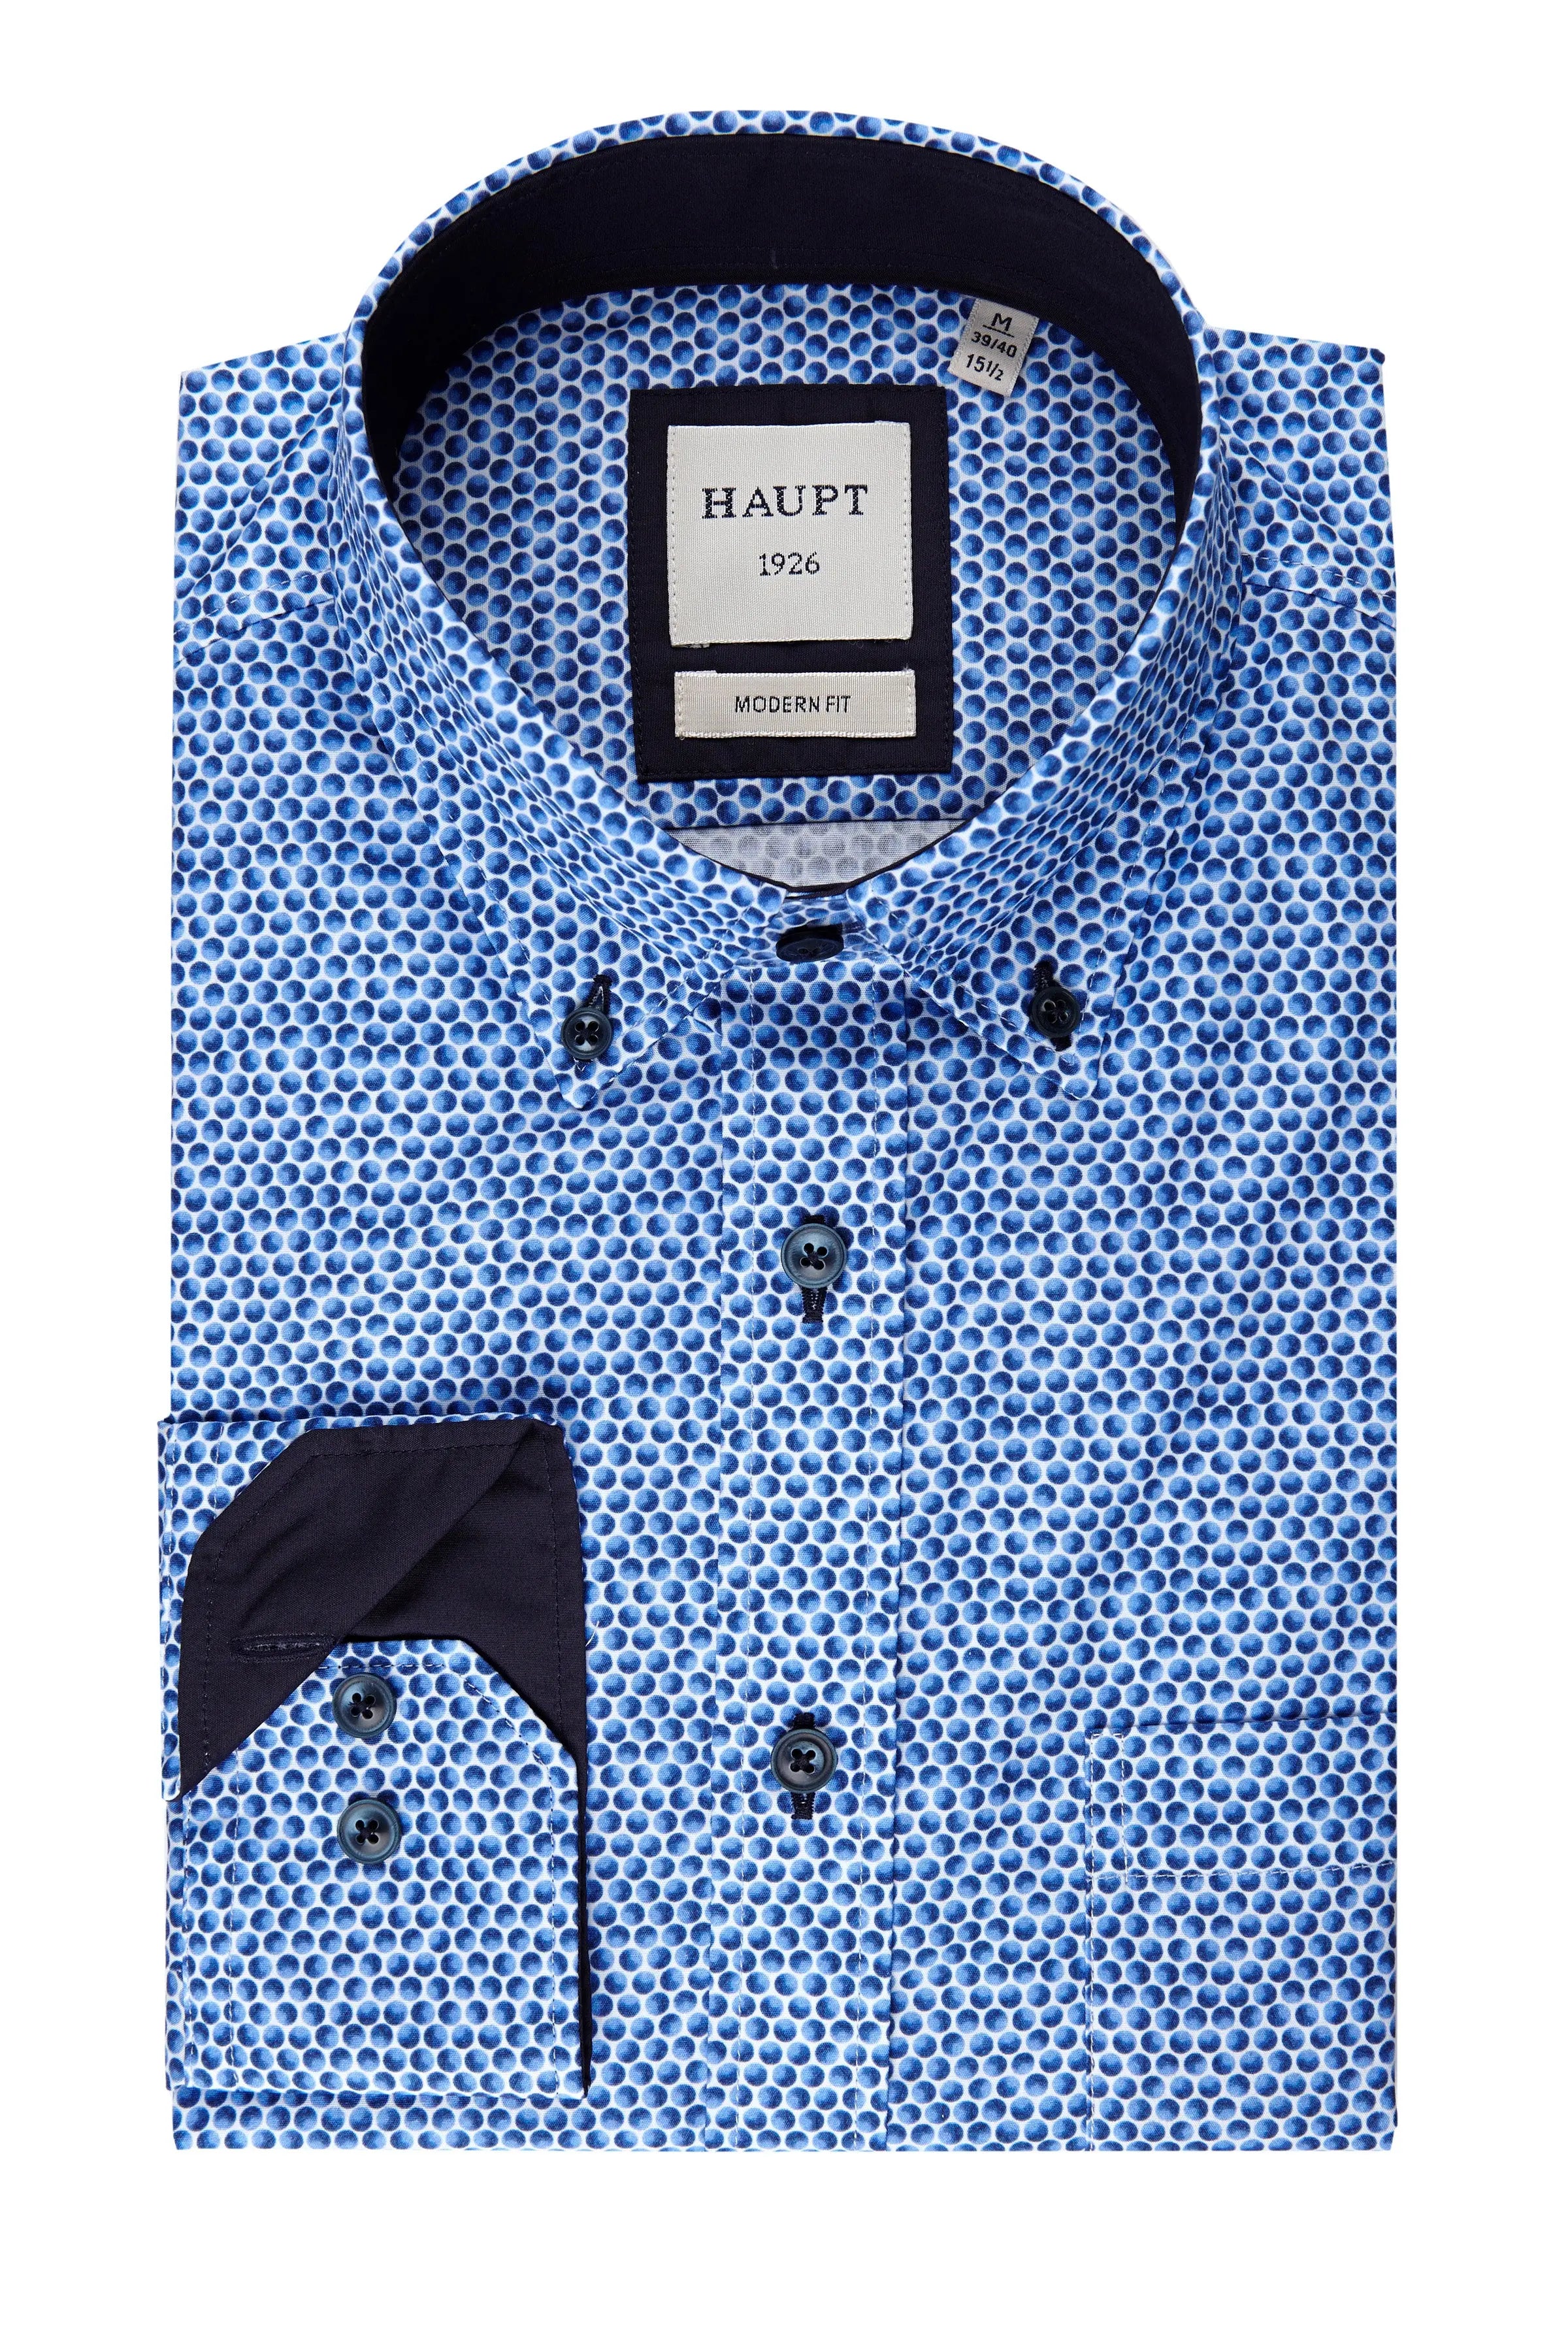 Baumwoll-Herrenhemd navy print Haupt